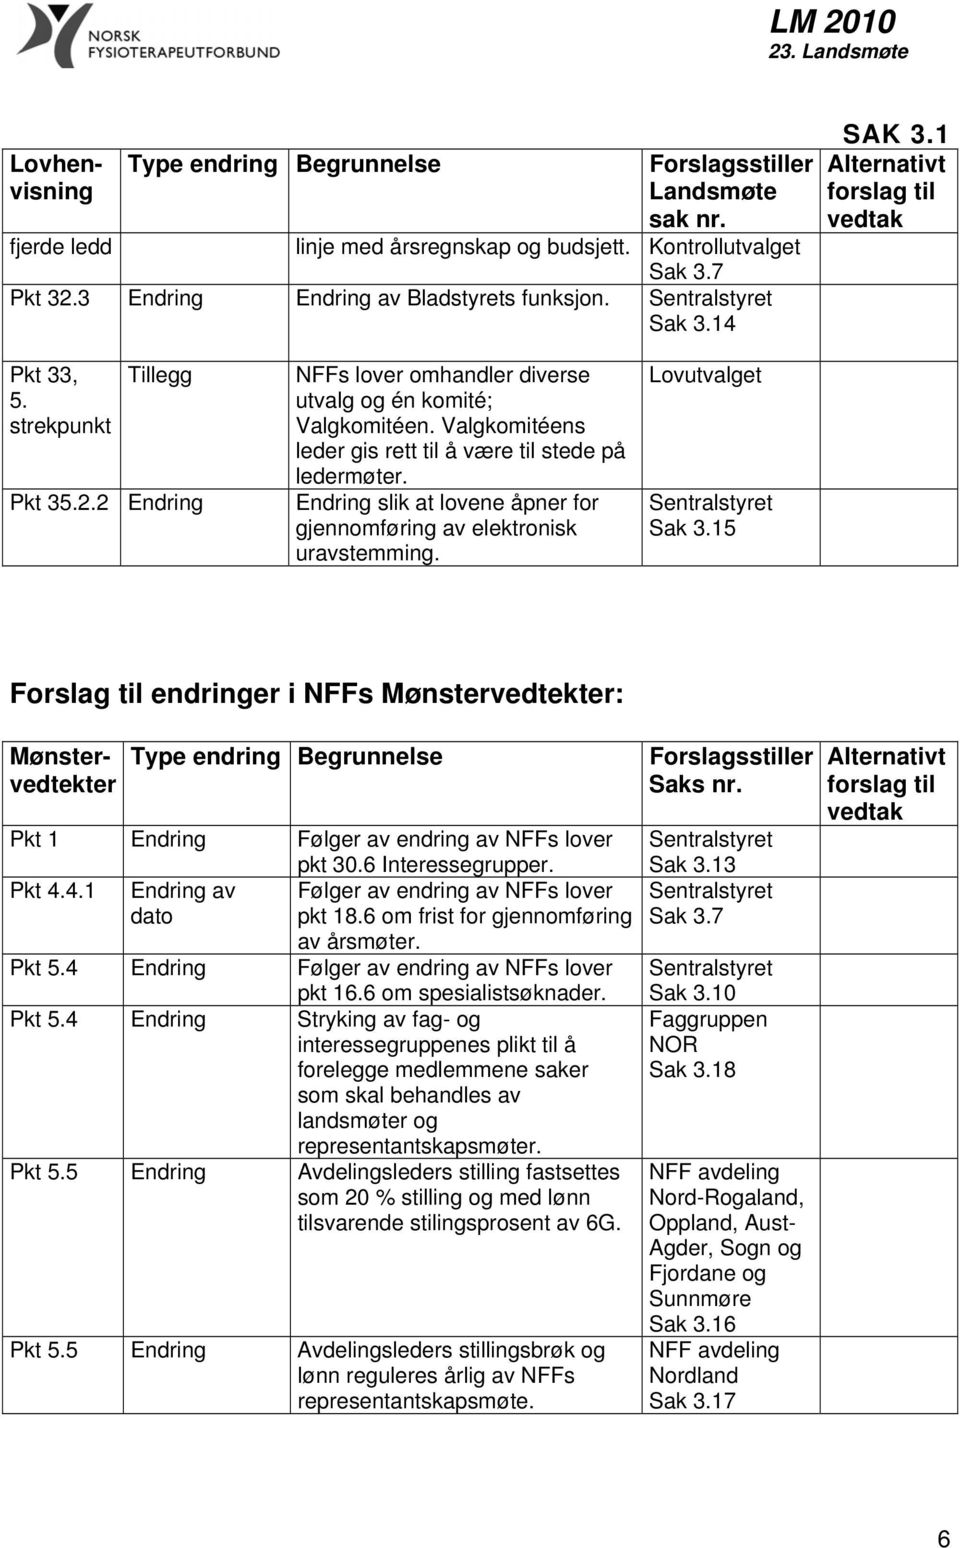 15 Forslag til endringer i NFFs Mønstervedtekter: Mønstervedtekter Pkt 1 Endring Følger av endring av NFFs lover pkt 30.6 Interessegrupper. Pkt 4.4.1 Endring av Følger av endring av NFFs lover pkt 18.